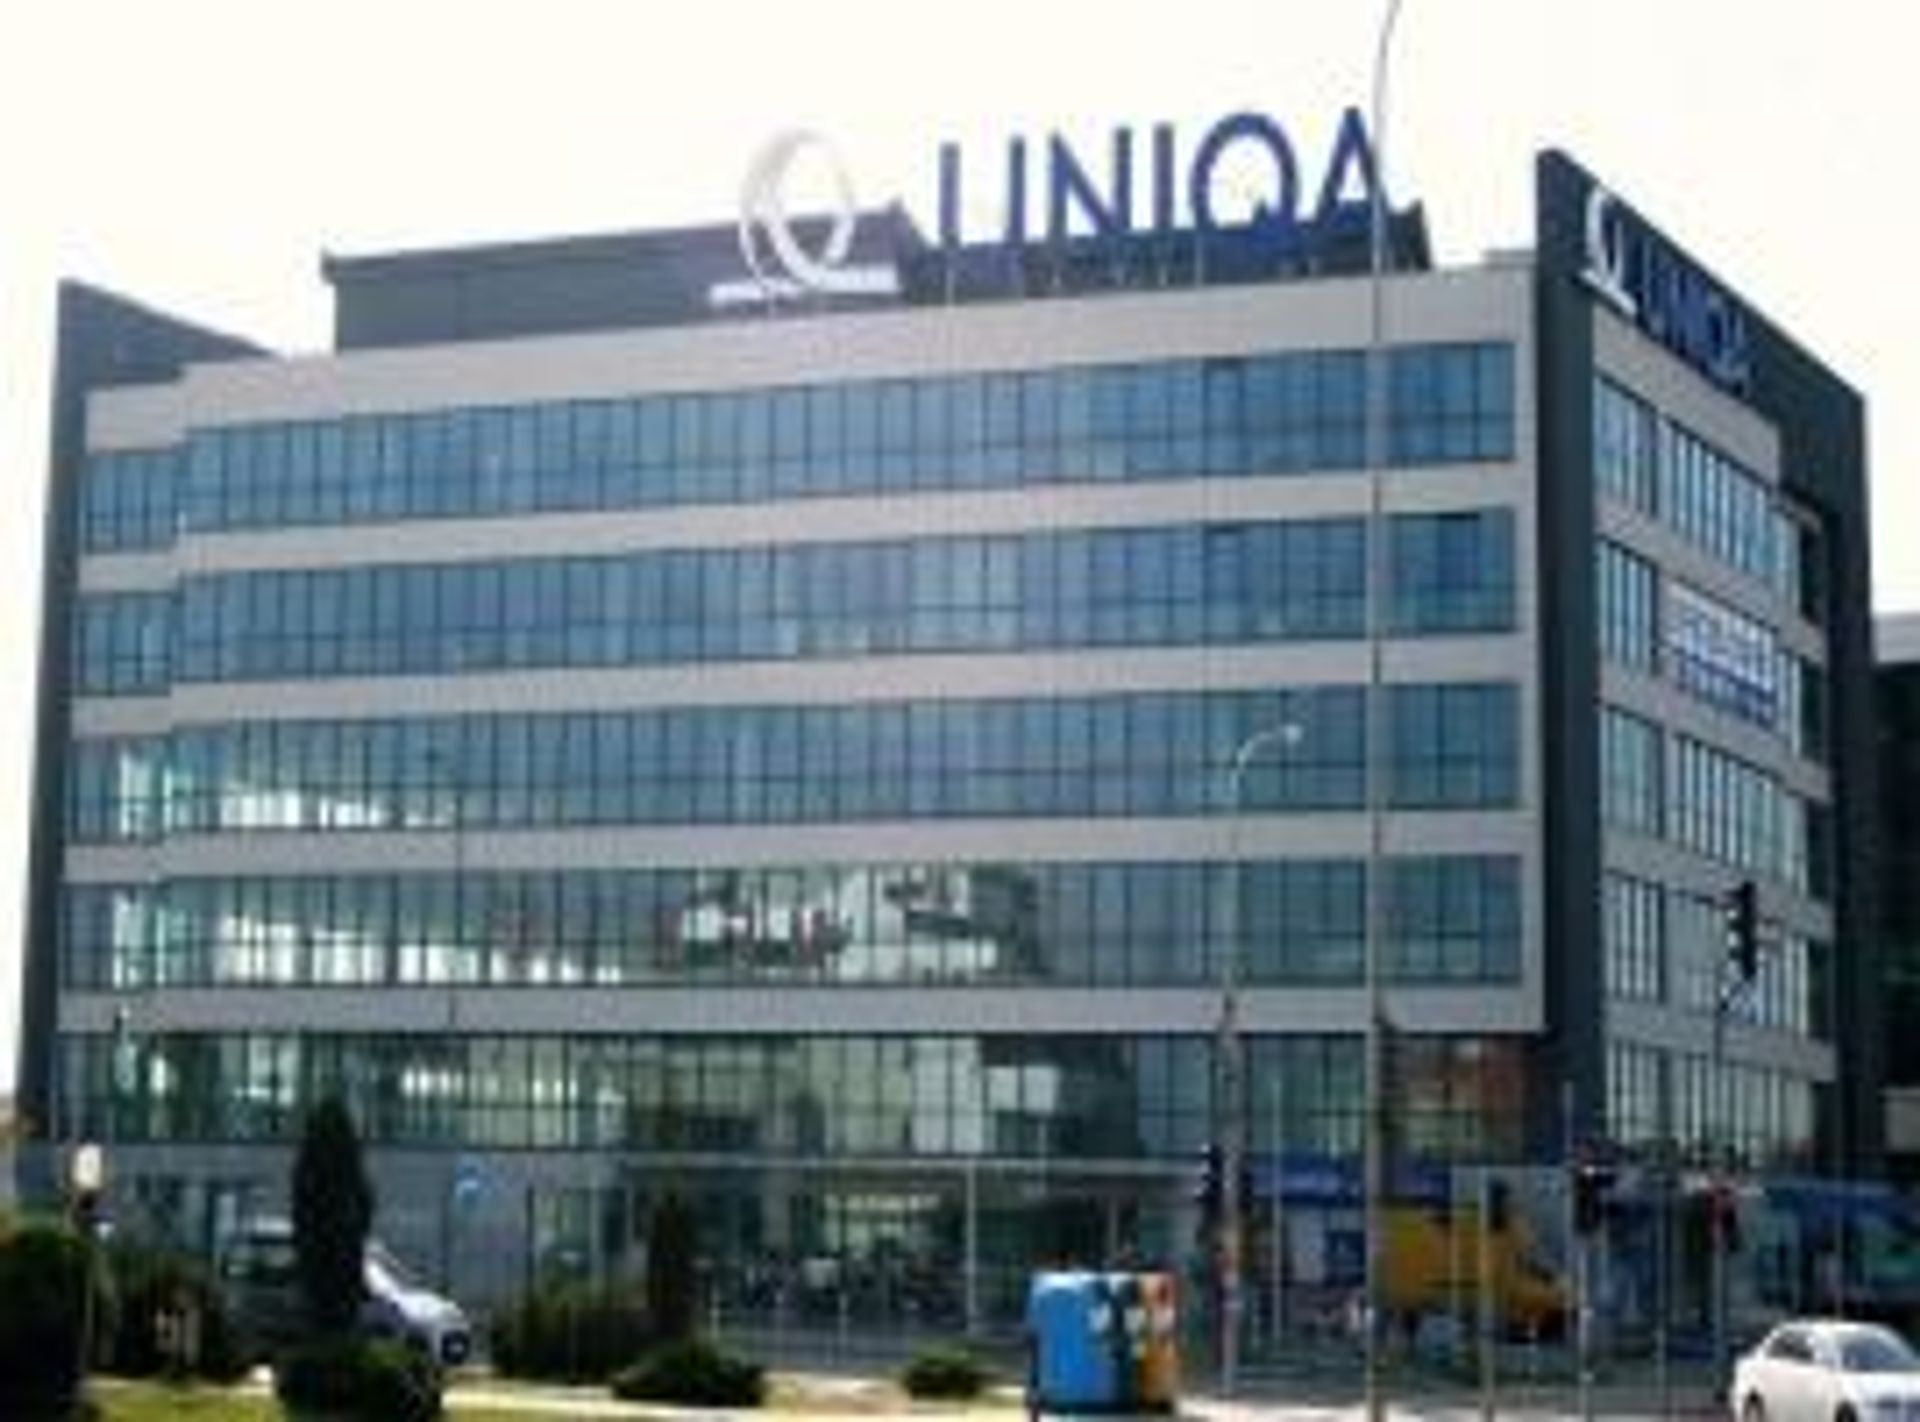  Biurowiec UNIQA Forum wynajęty w 100%